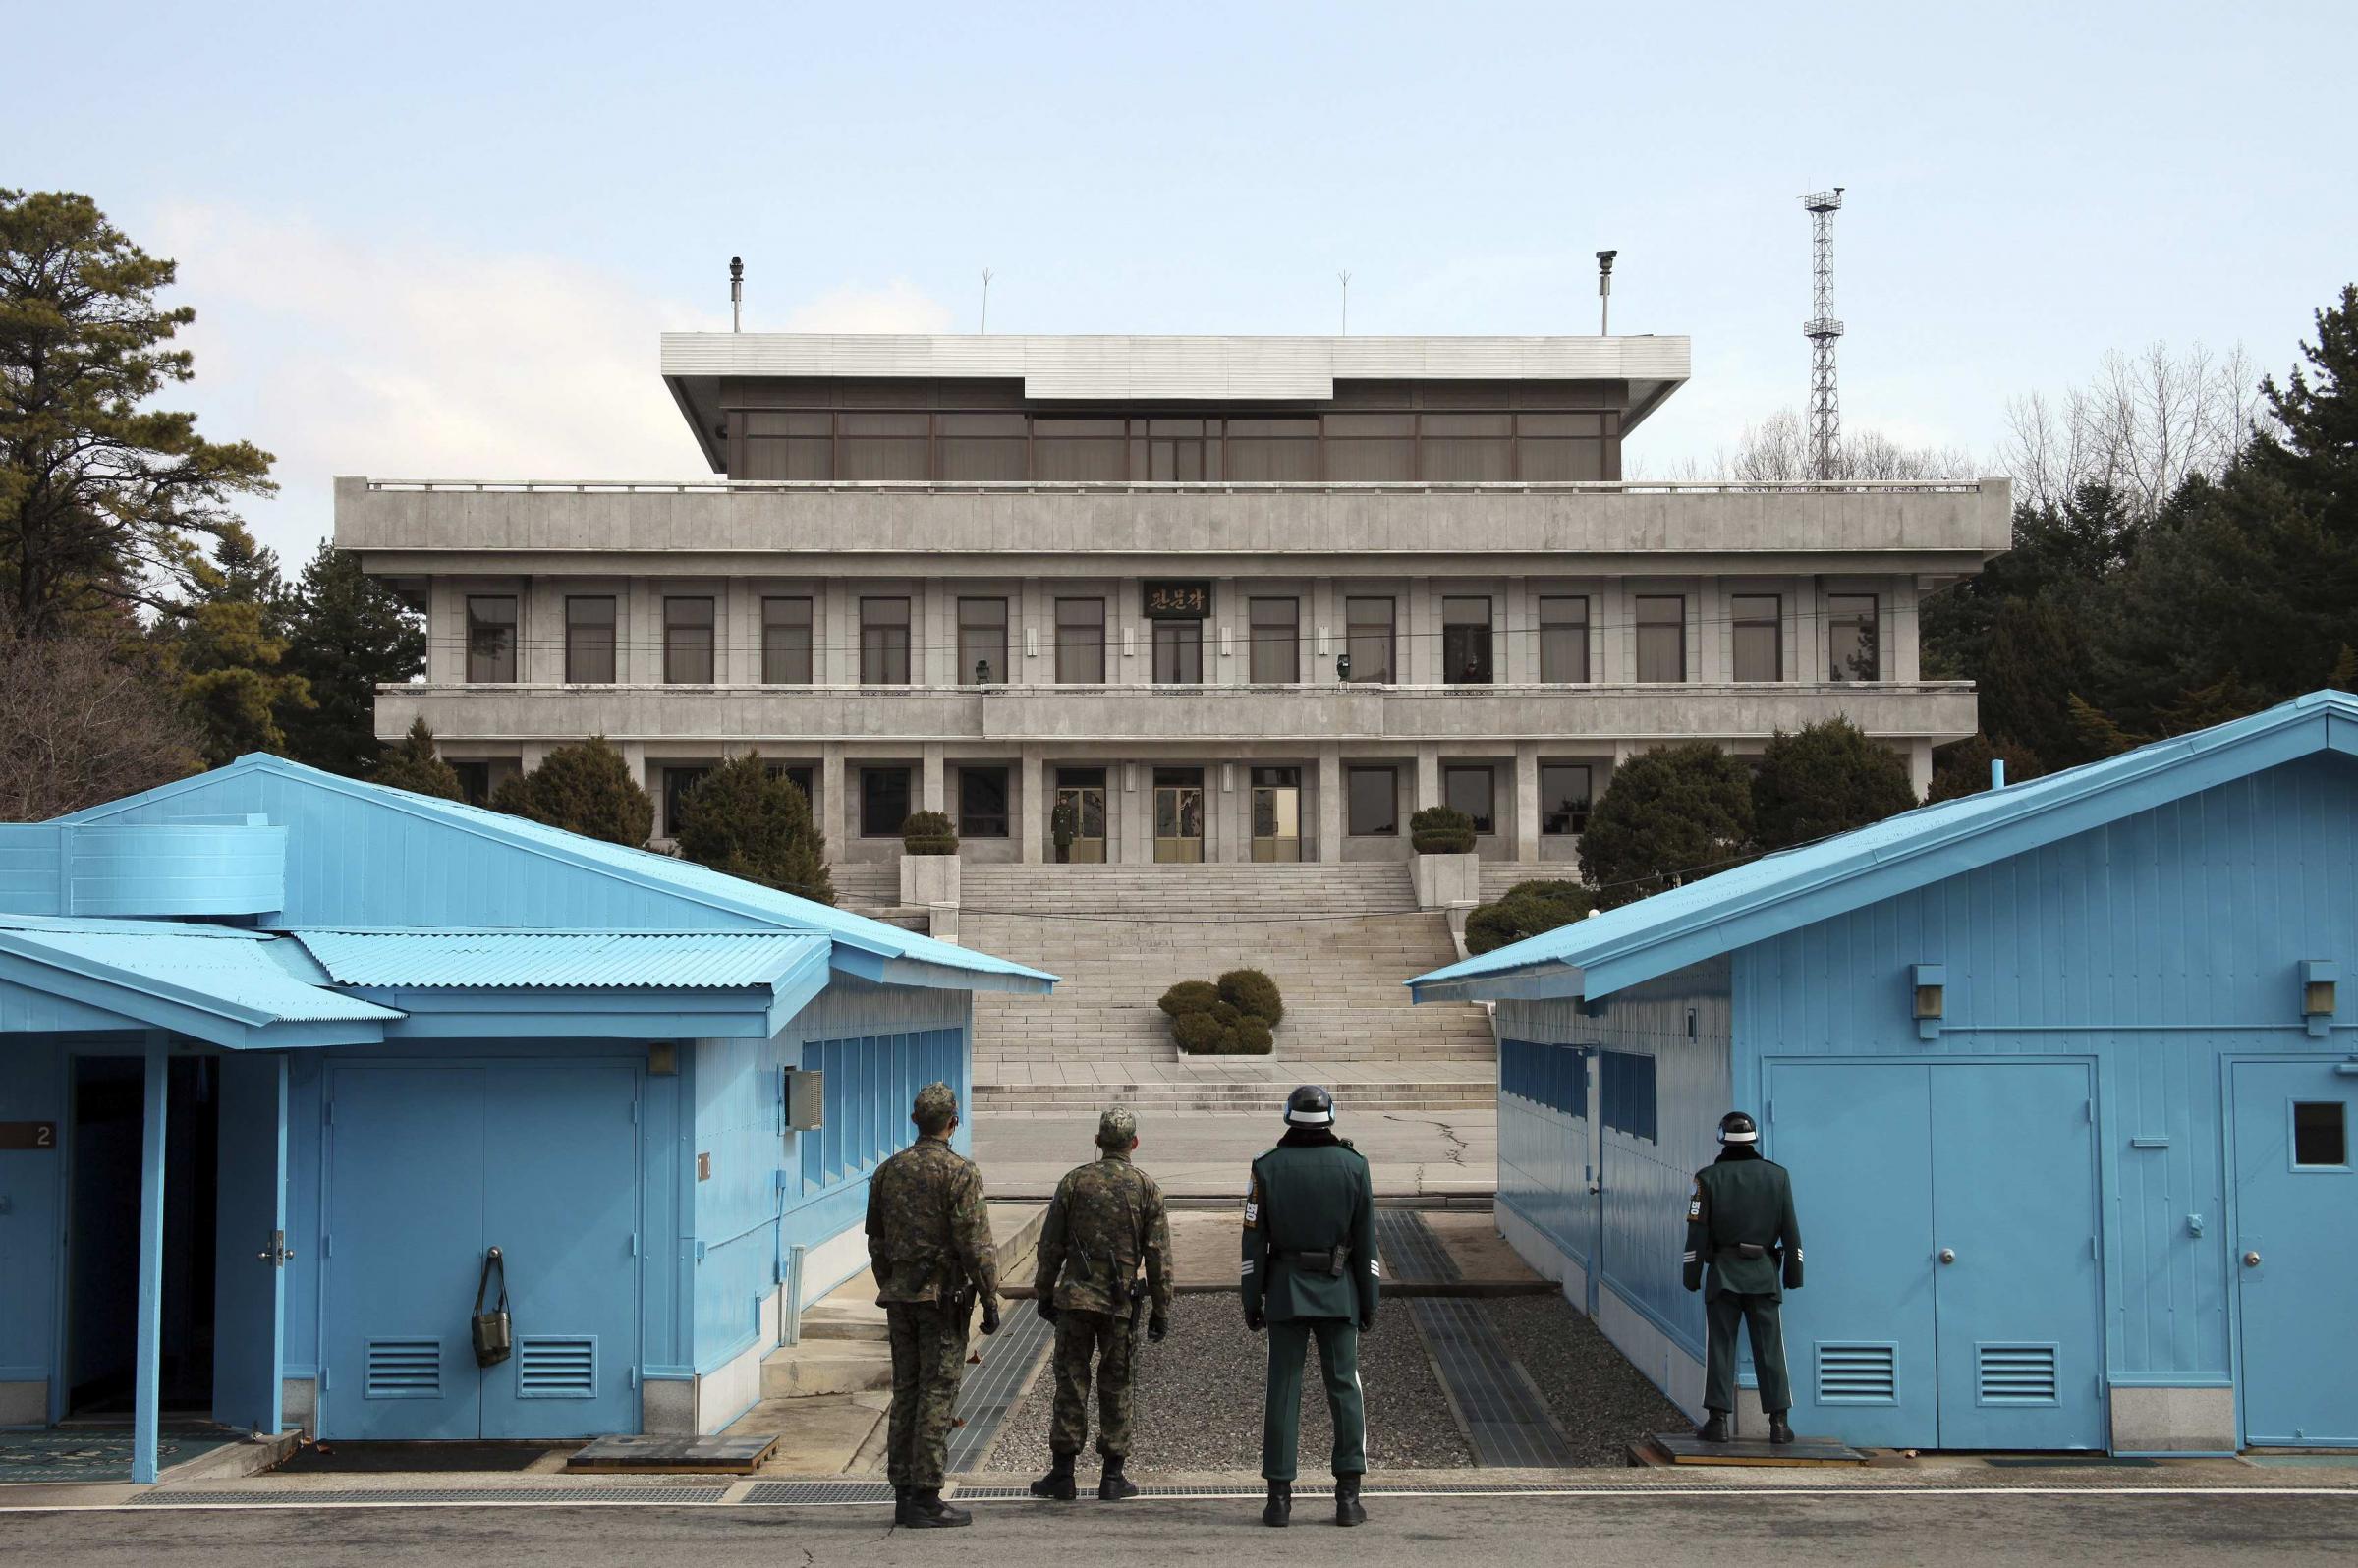 朝鲜百万学生自愿报名参军 韩国调查敏感时期高官打高尔夫